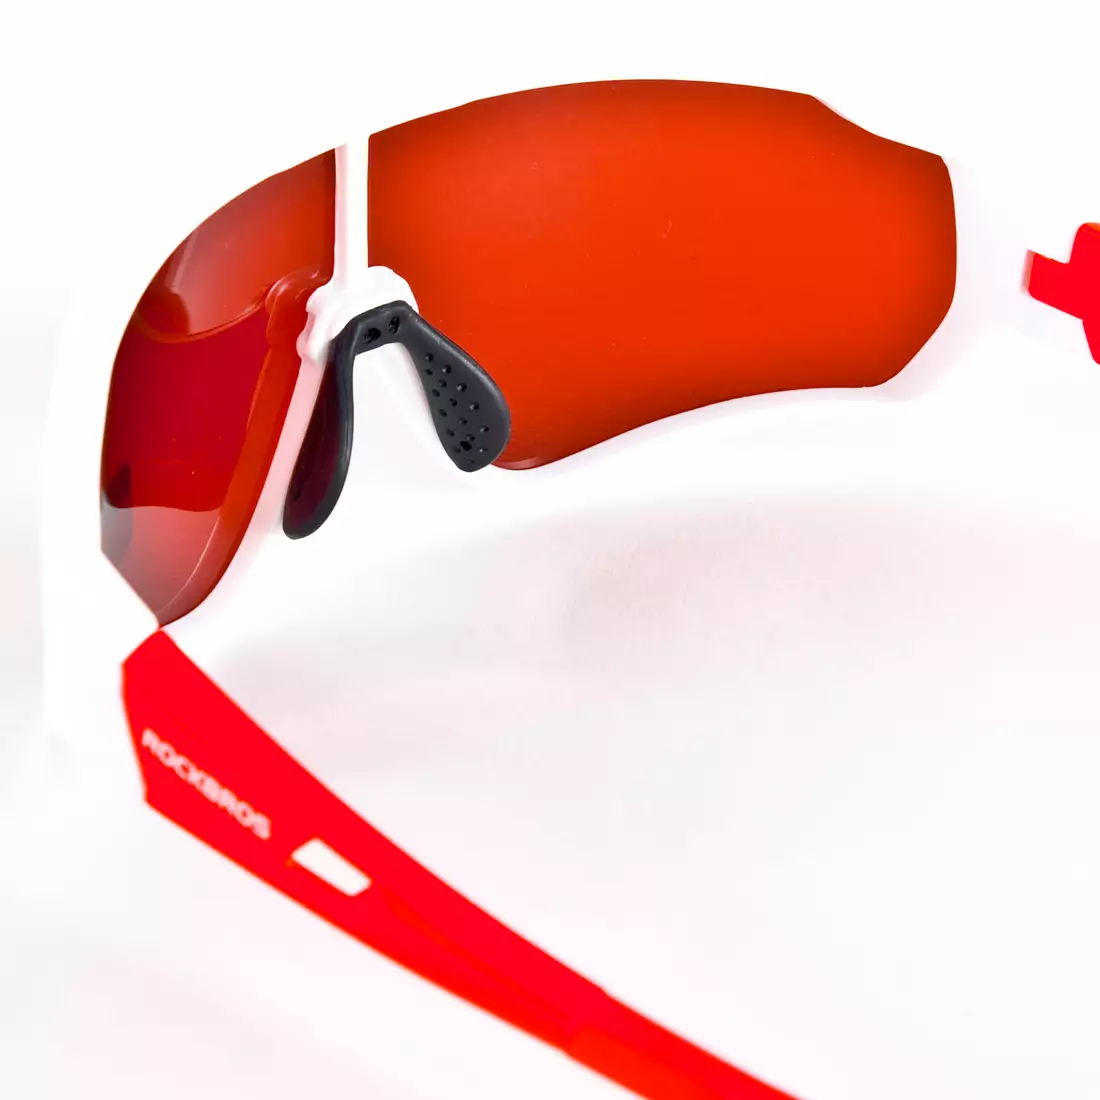 Rockbros 10162 Polarizované sportovní brýle na kolo, bílé a červené